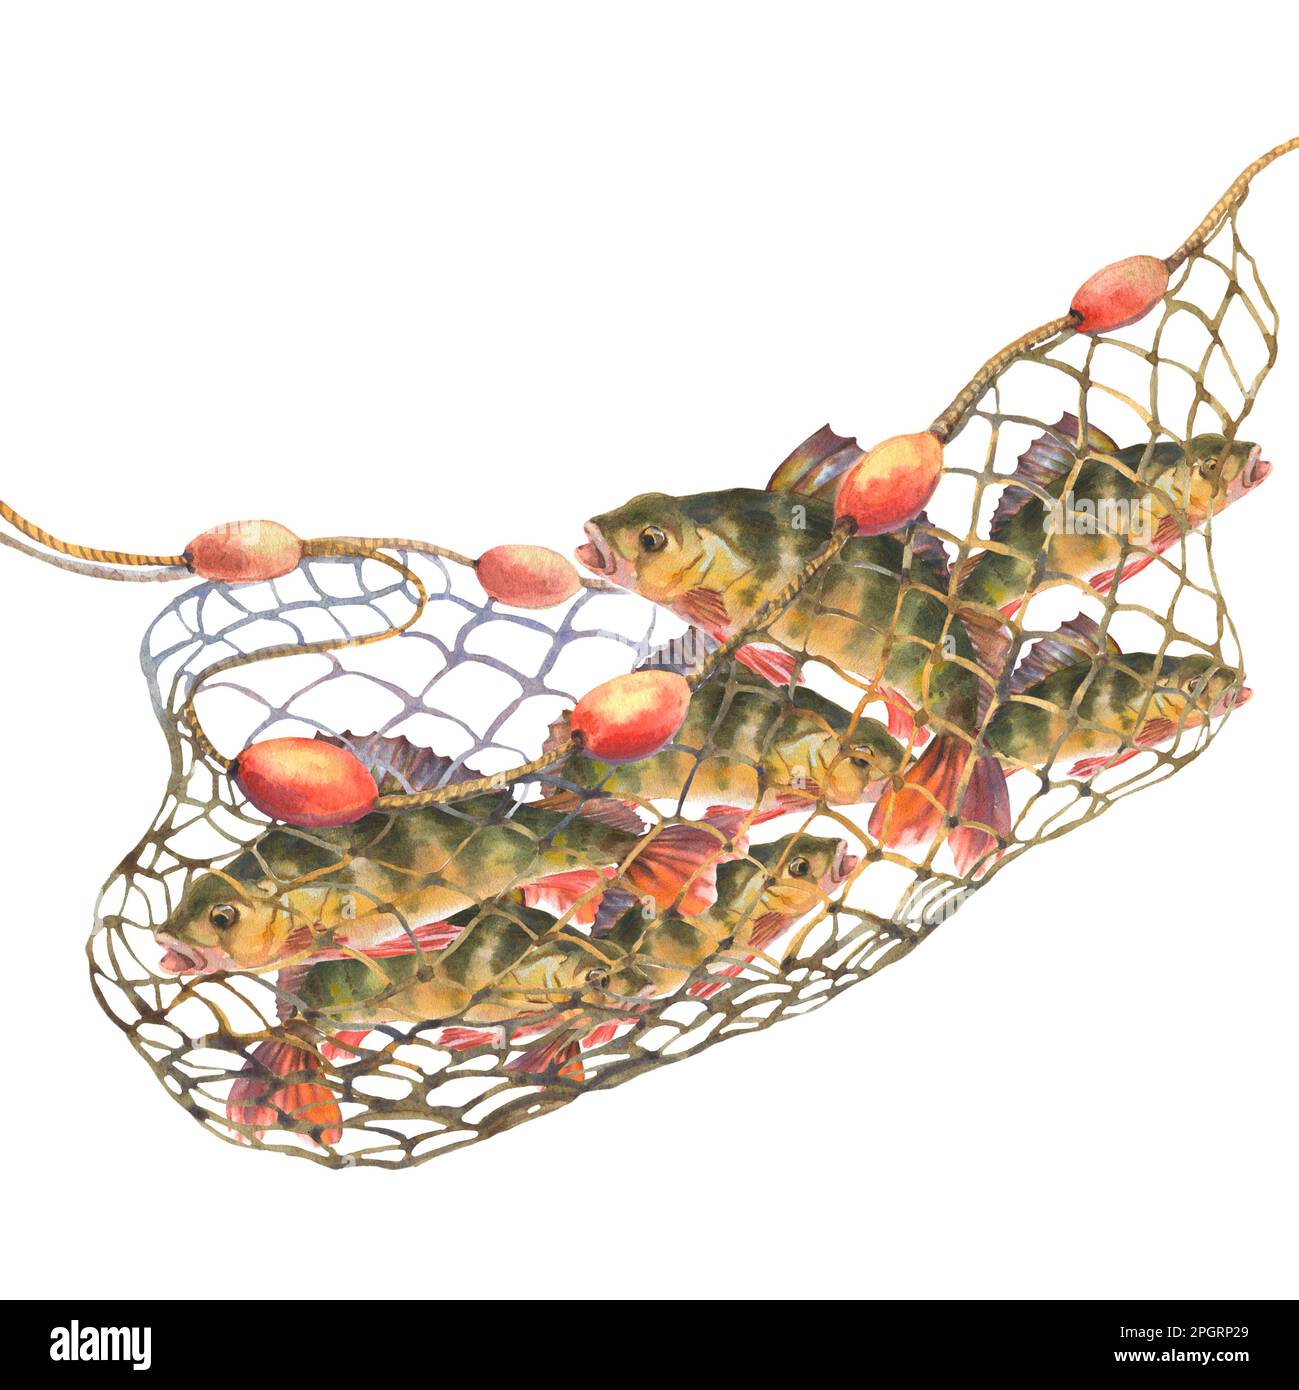 Aquarell-Darstellung, Fisch gefangen in einem Fischernetz. Perche, die sich in einem Fischernetz verfangen haben, isoliert auf weißem Hintergrund. Schneide das Clip Art-Element für die Beschreibung aus Stockfoto